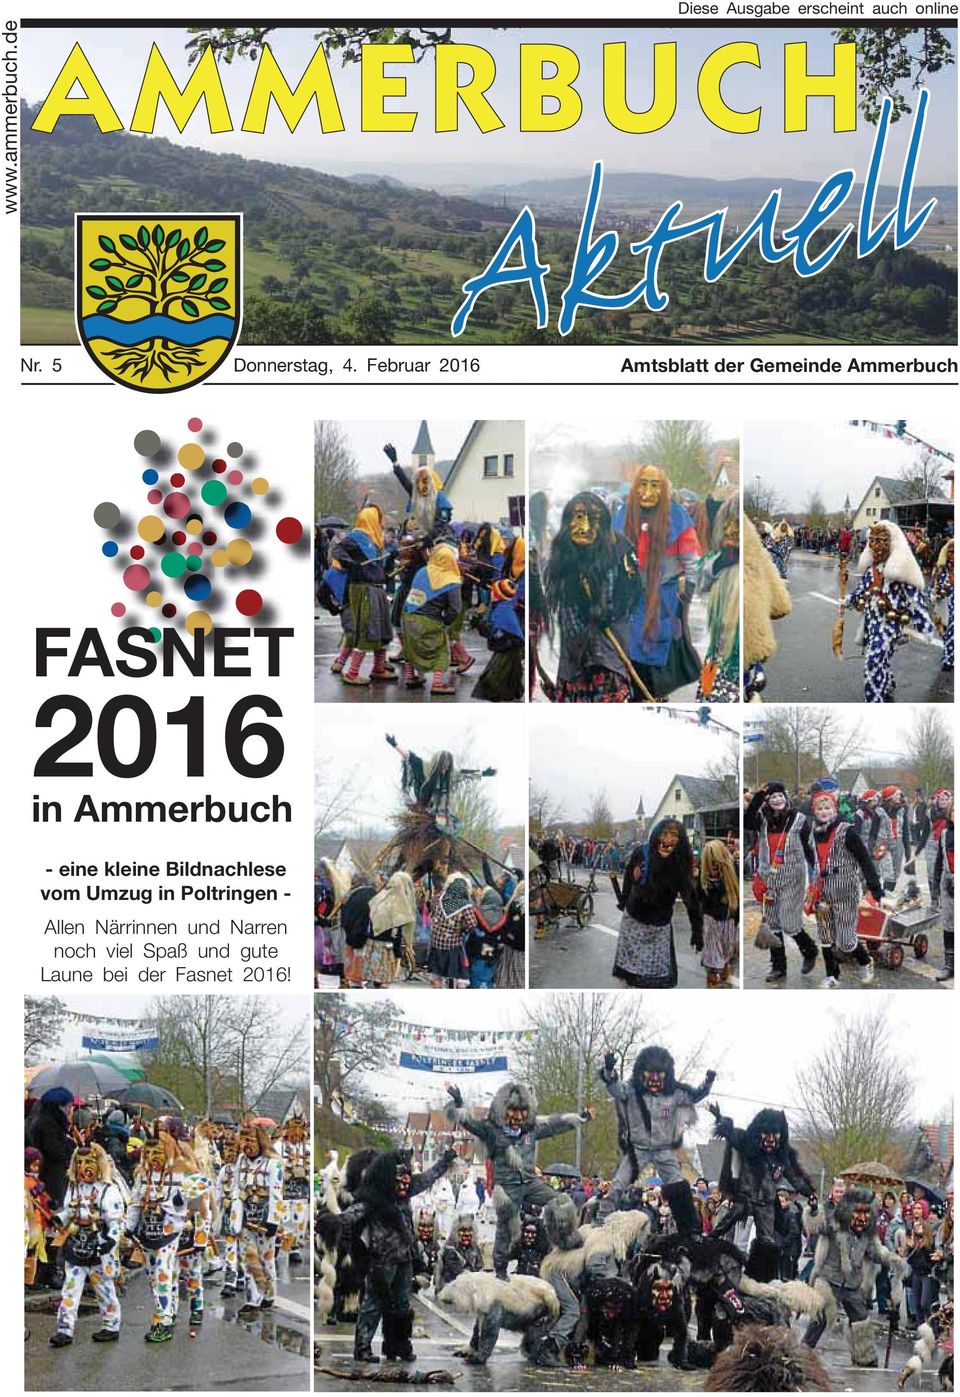 Februar 2016 Amtsblatt der Gemeinde Ammerbuch FASNET 2016 in